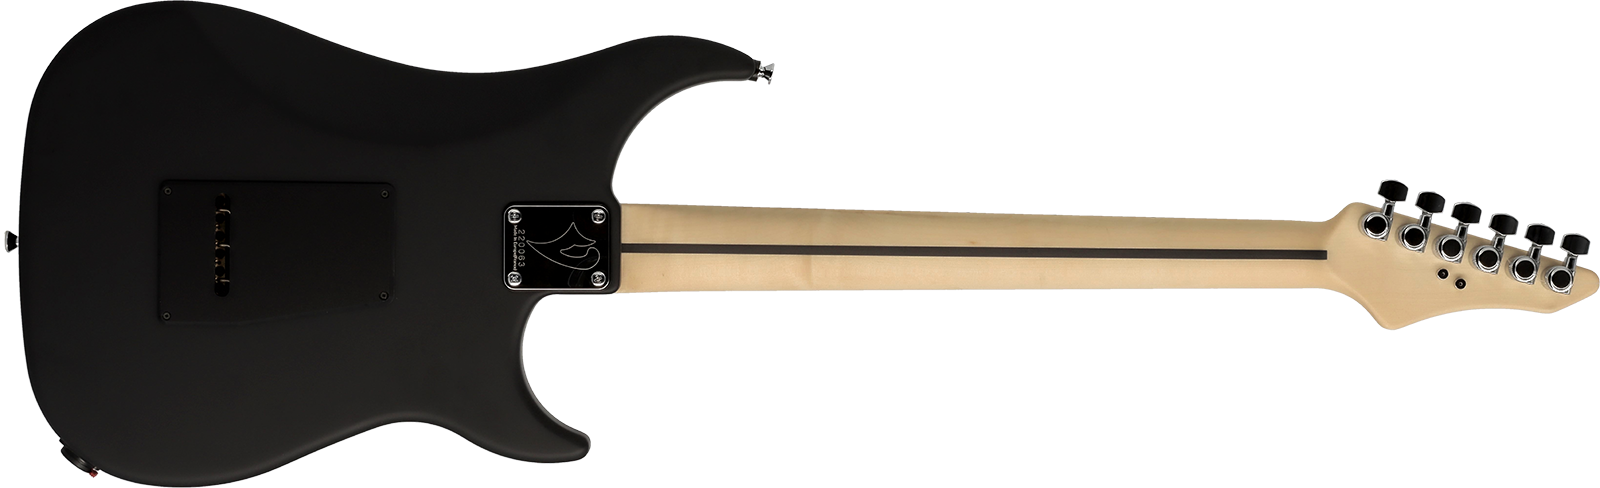 Vigier Excalibur Indus Lh Gaucher 2h Trem Mn - Textured Black - Guitarra electrica para zurdos - Variation 1